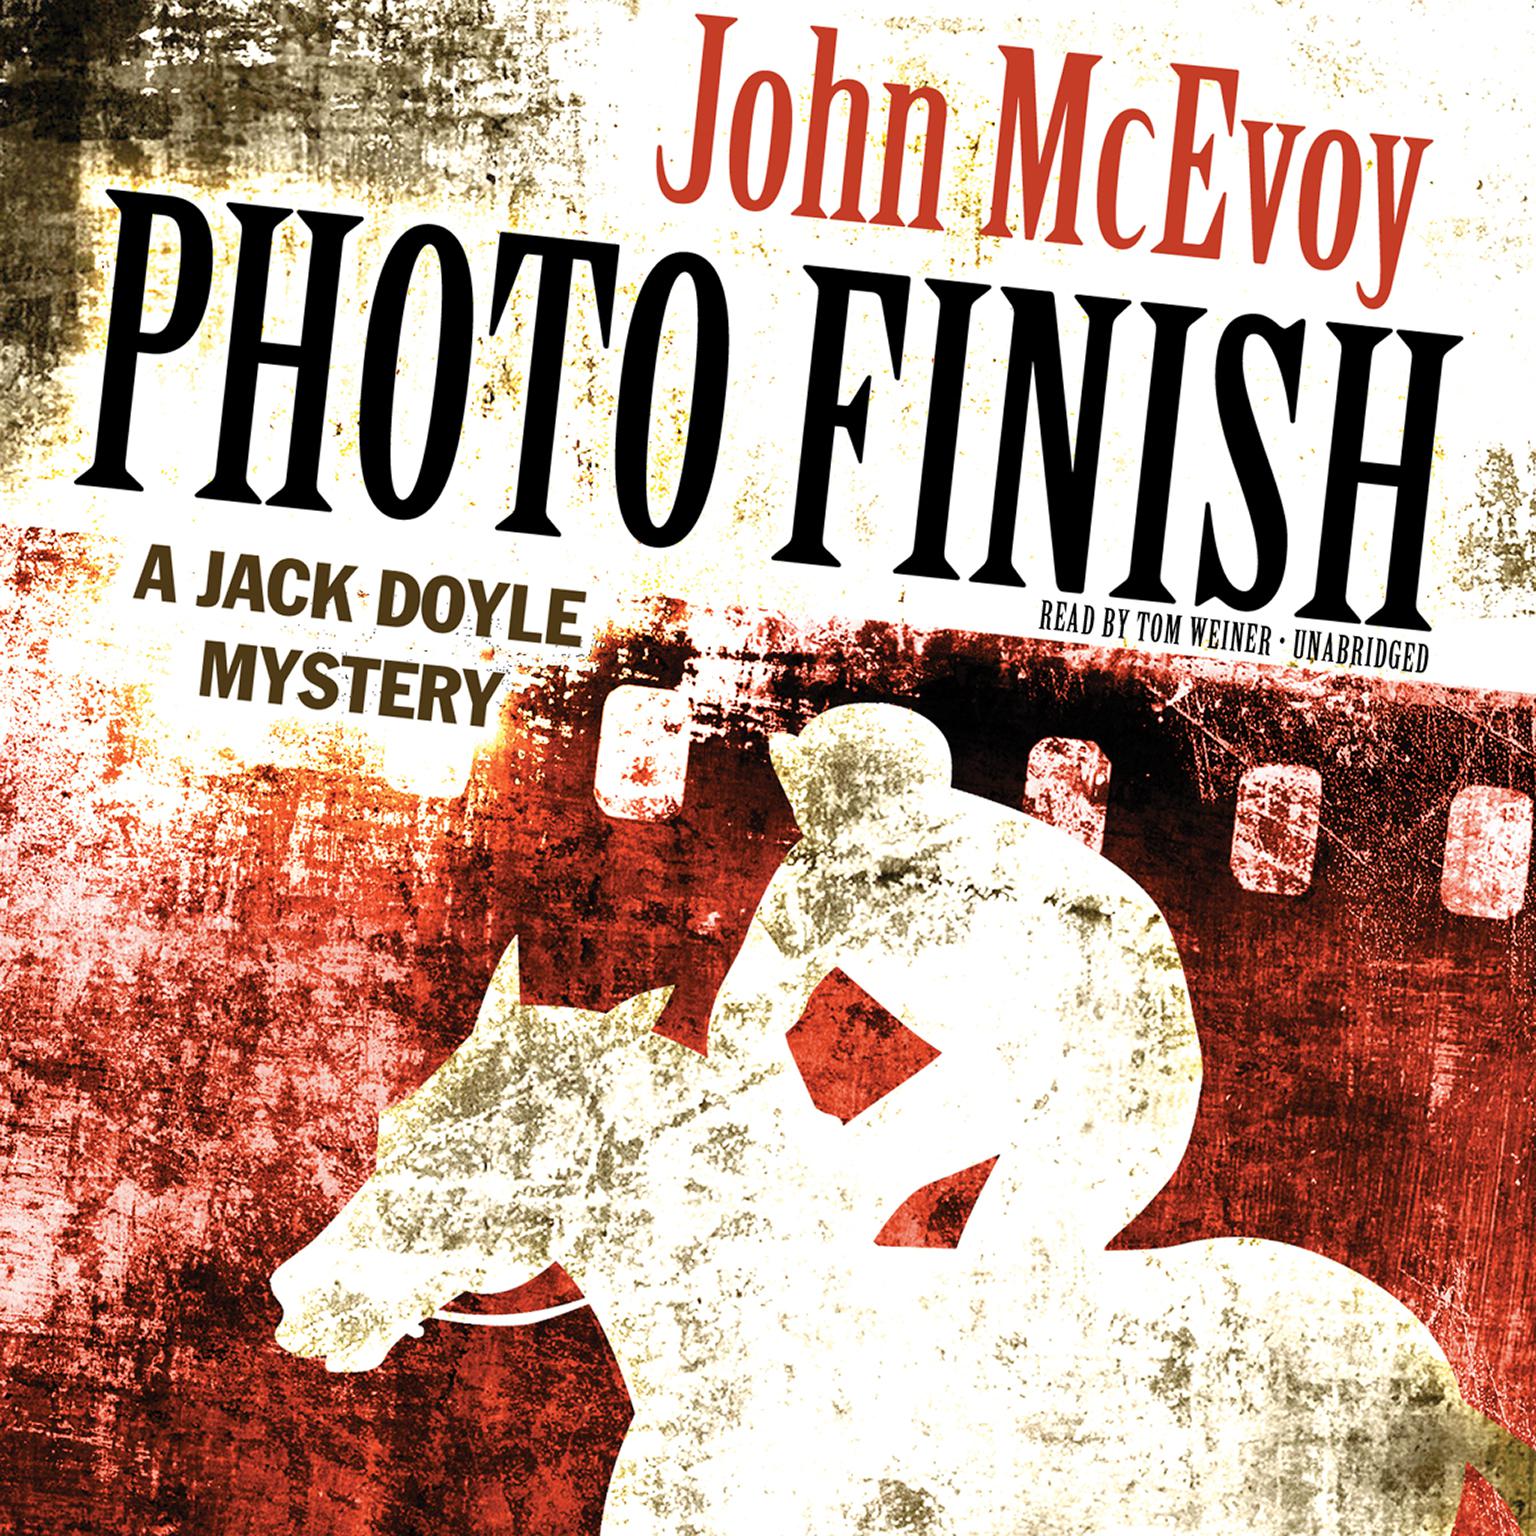 Photo Finish: A Jack Doyle Mystery Audiobook, by John McEvoy